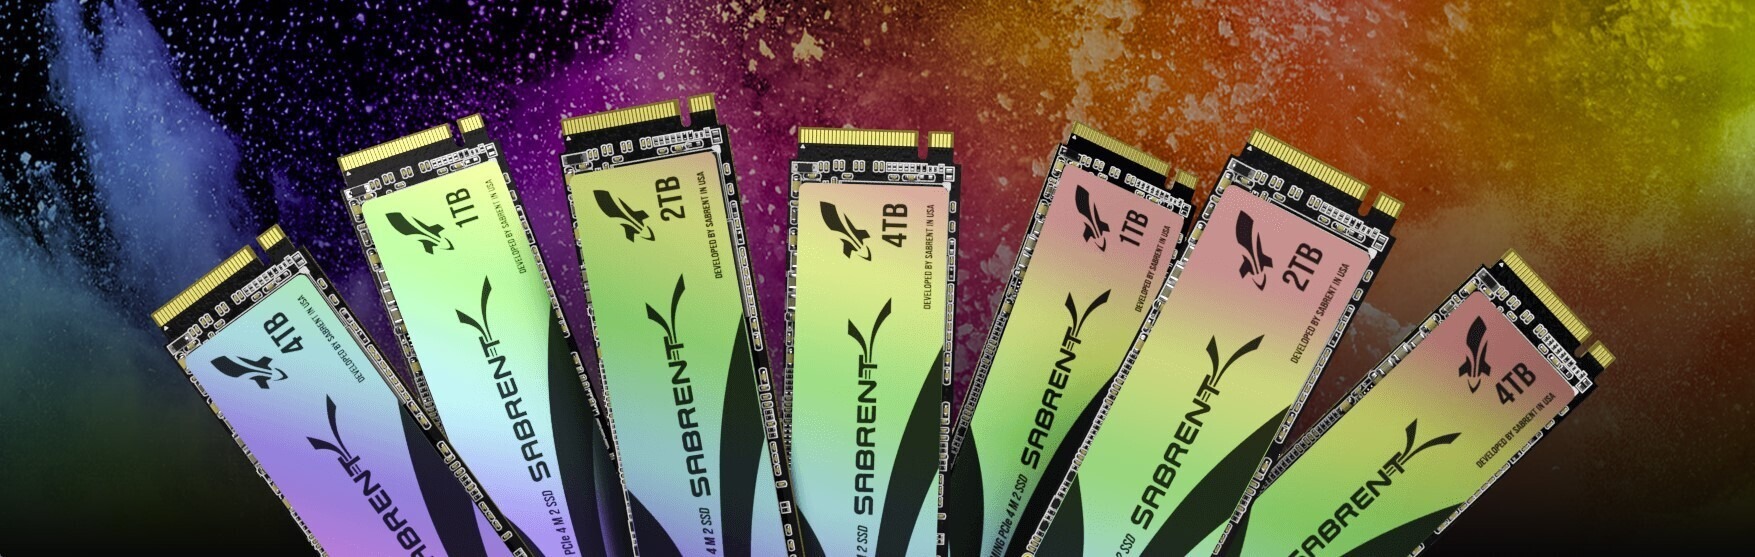 Sabrent Rocket 4 Plus G PCIe 4.0